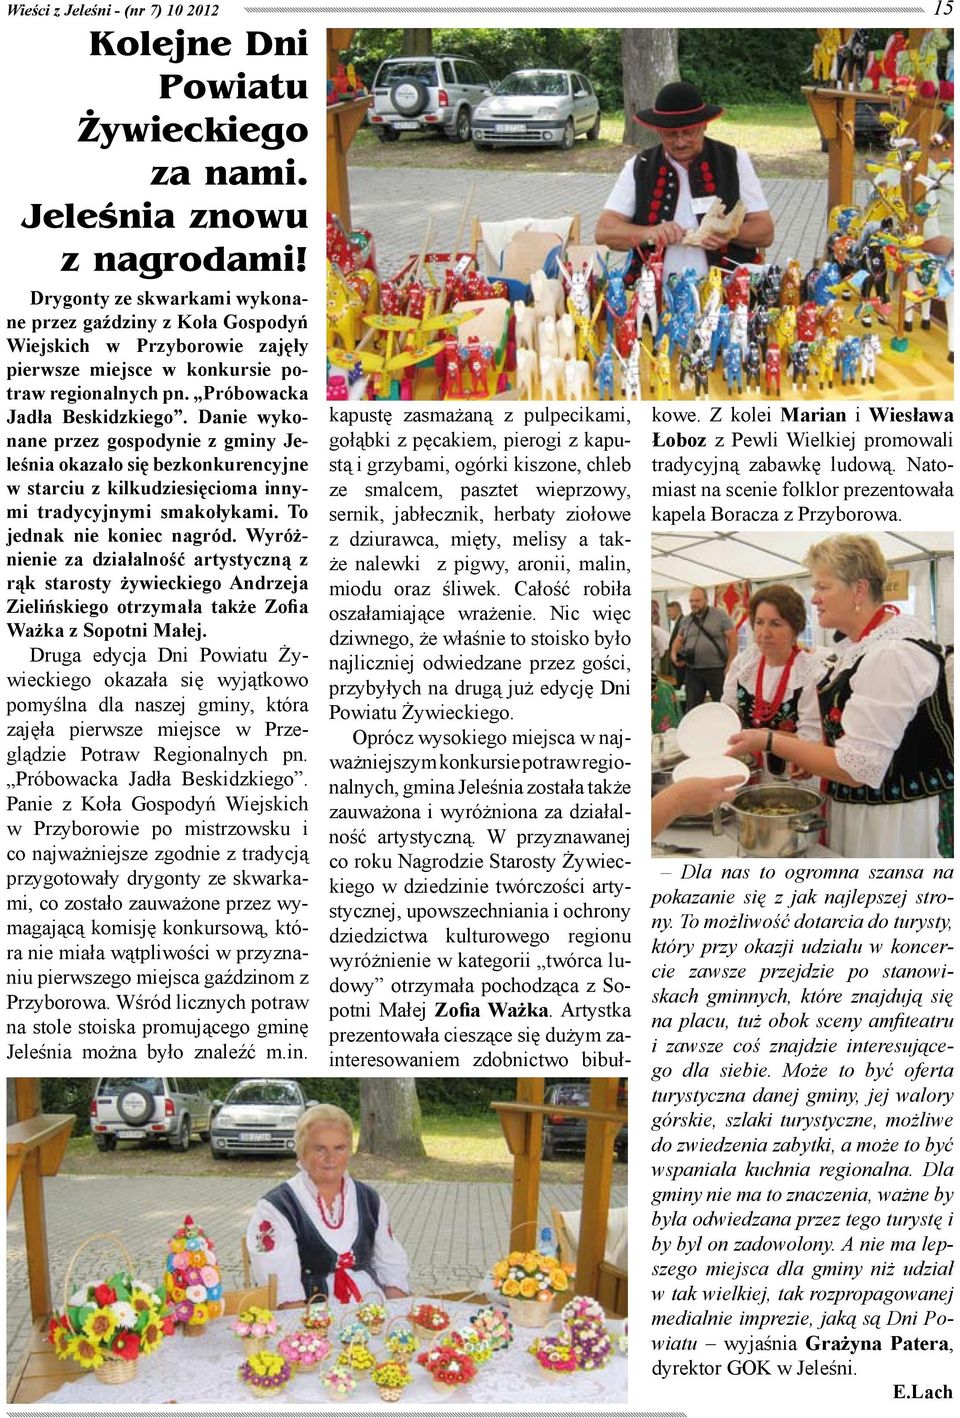 Danie wykonane przez gospodynie z gminy Jeleśnia okazało się bezkonkurencyjne w starciu z kilkudziesięcioma innymi tradycyjnymi smakołykami. To jednak nie koniec nagród.